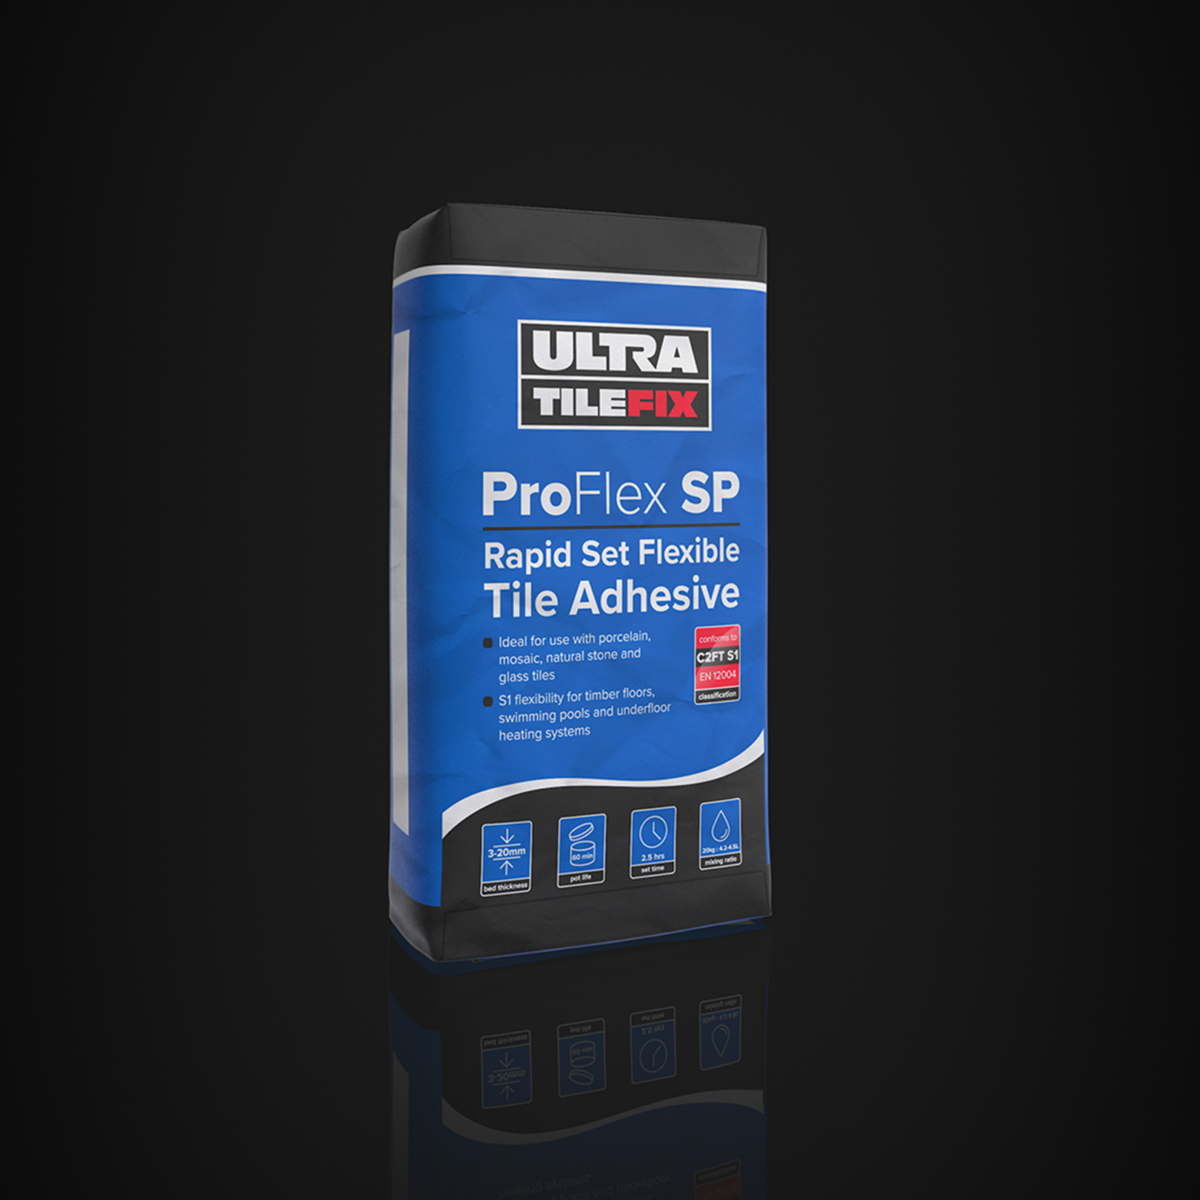 Ultra Tile Fix Proflex SP Rapid Set Flexible Tile Adhesive